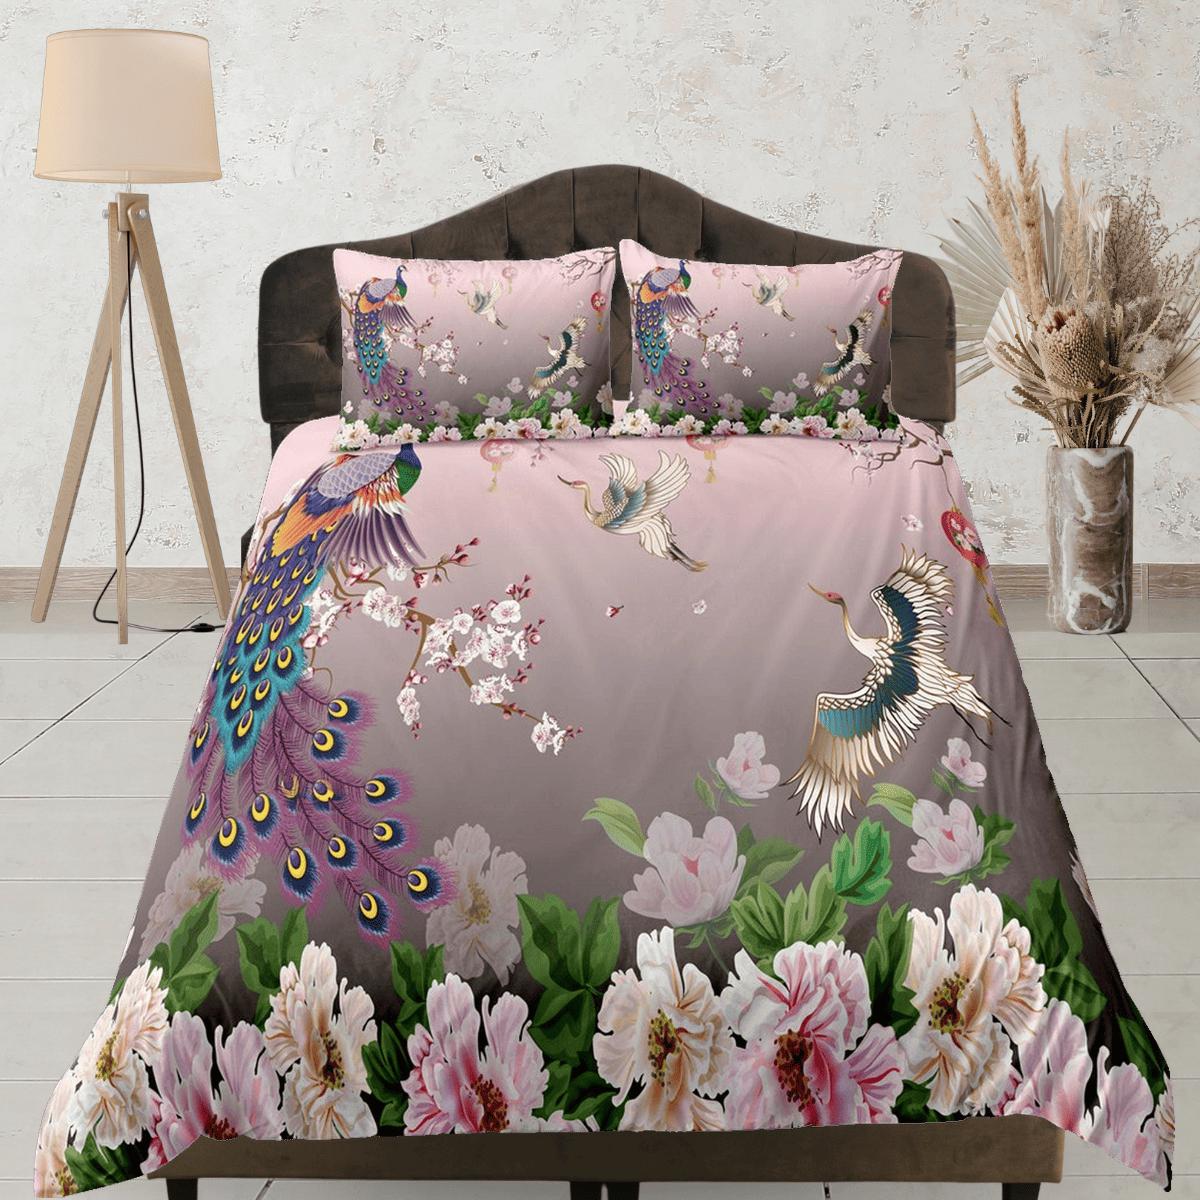 daintyduvet Pink peacock aesthetic bedding set full, crane bird, floral prints, luxury duvet cover queen, king, boho duvet, designer bedding, maximalist